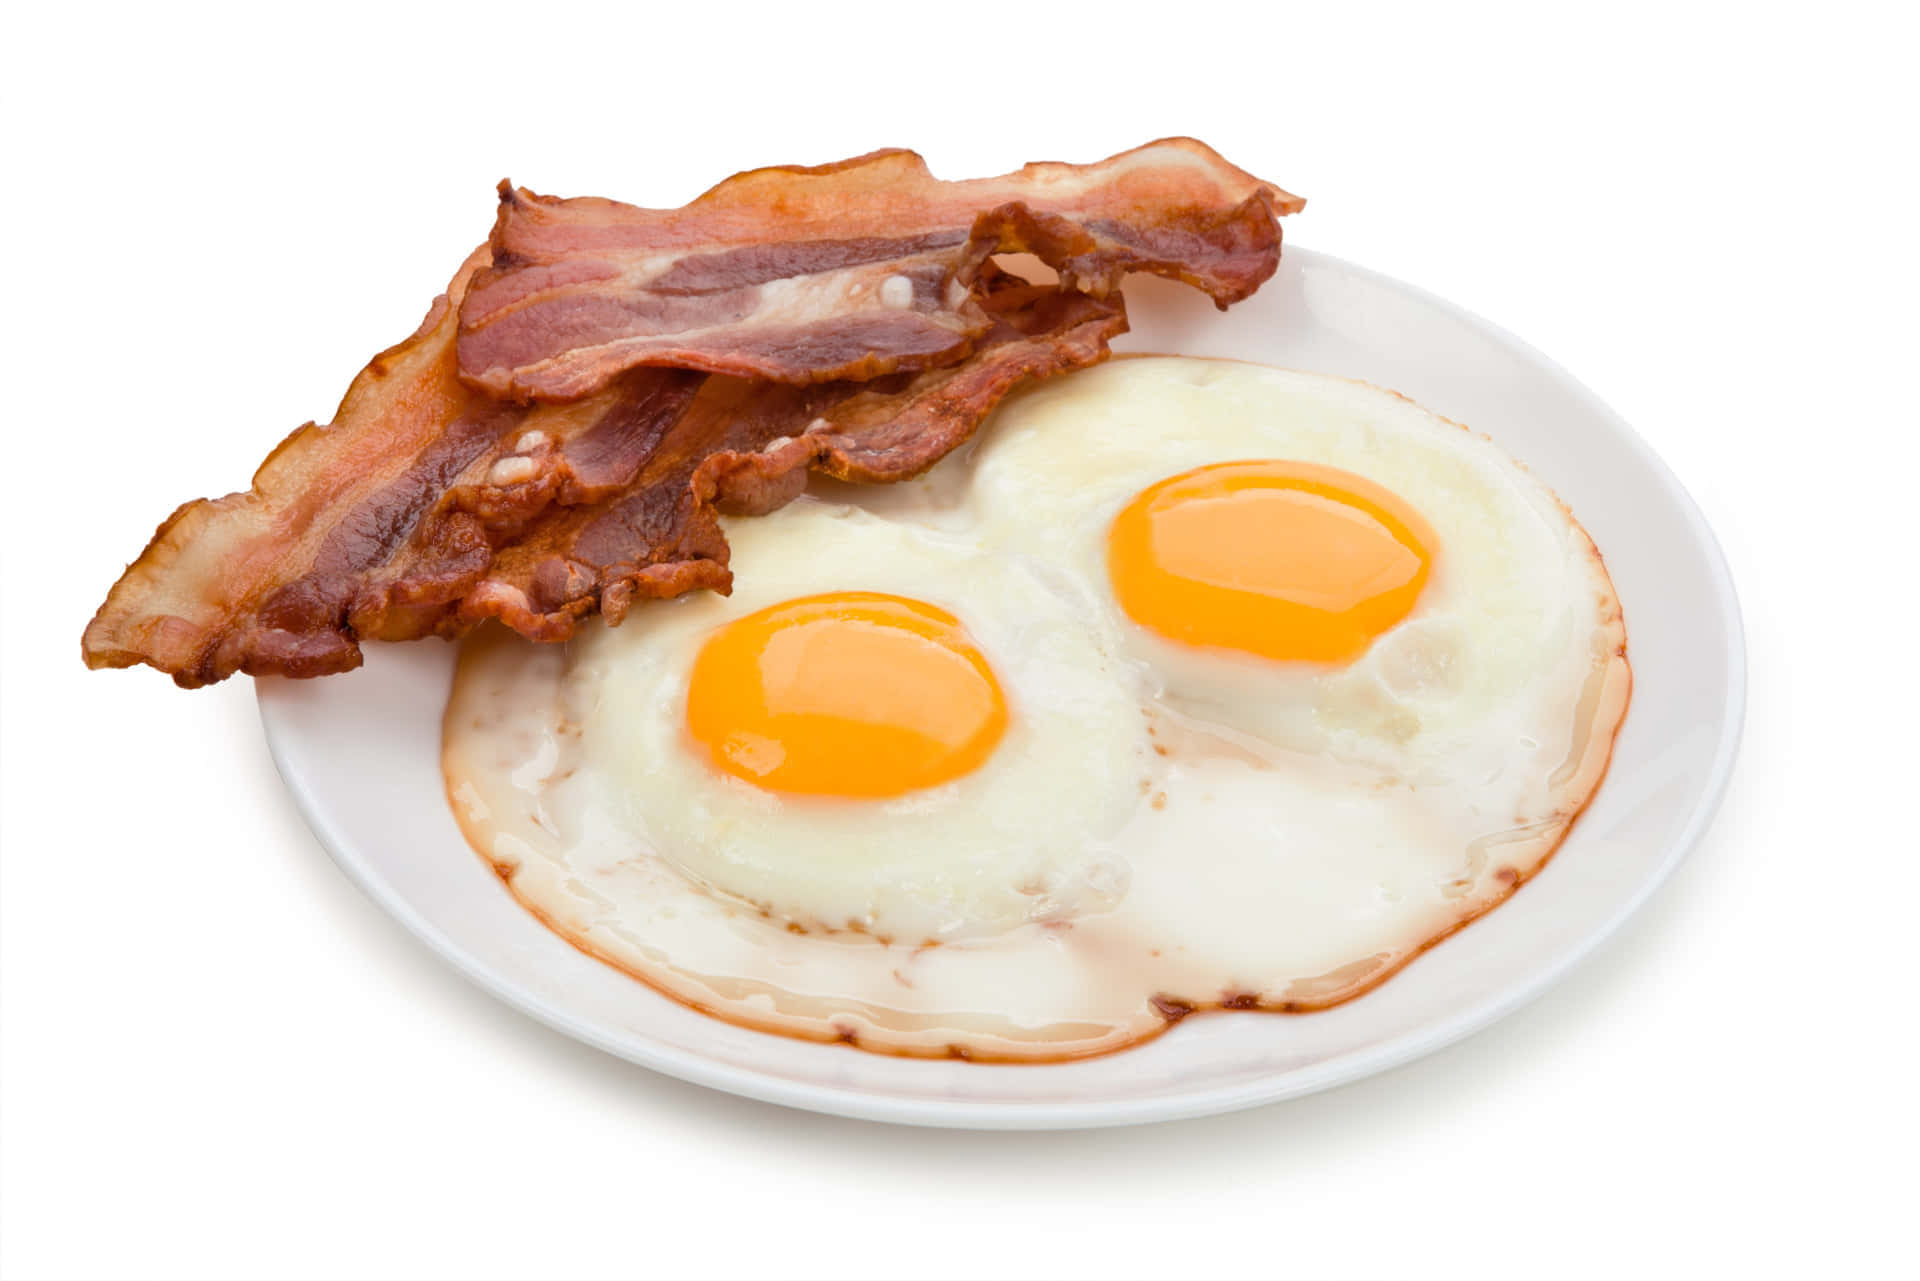 Baconand Eggs Breakfast Plate.jpg Background